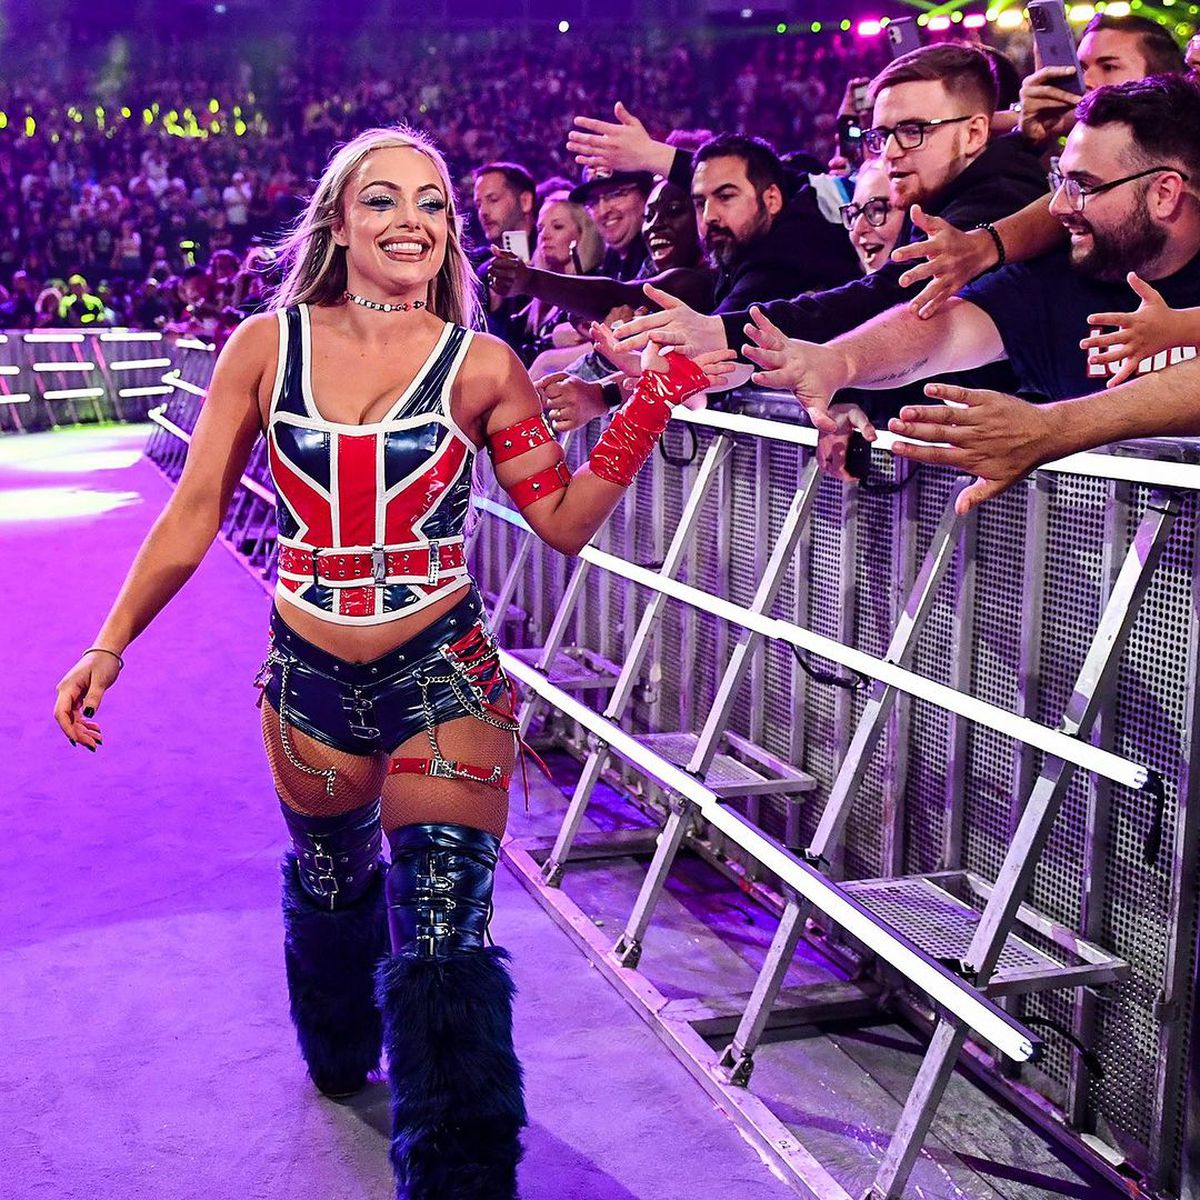 Reținută de poliție » Liv Morgan face senzație în WWE, dar acum are probleme cu legea